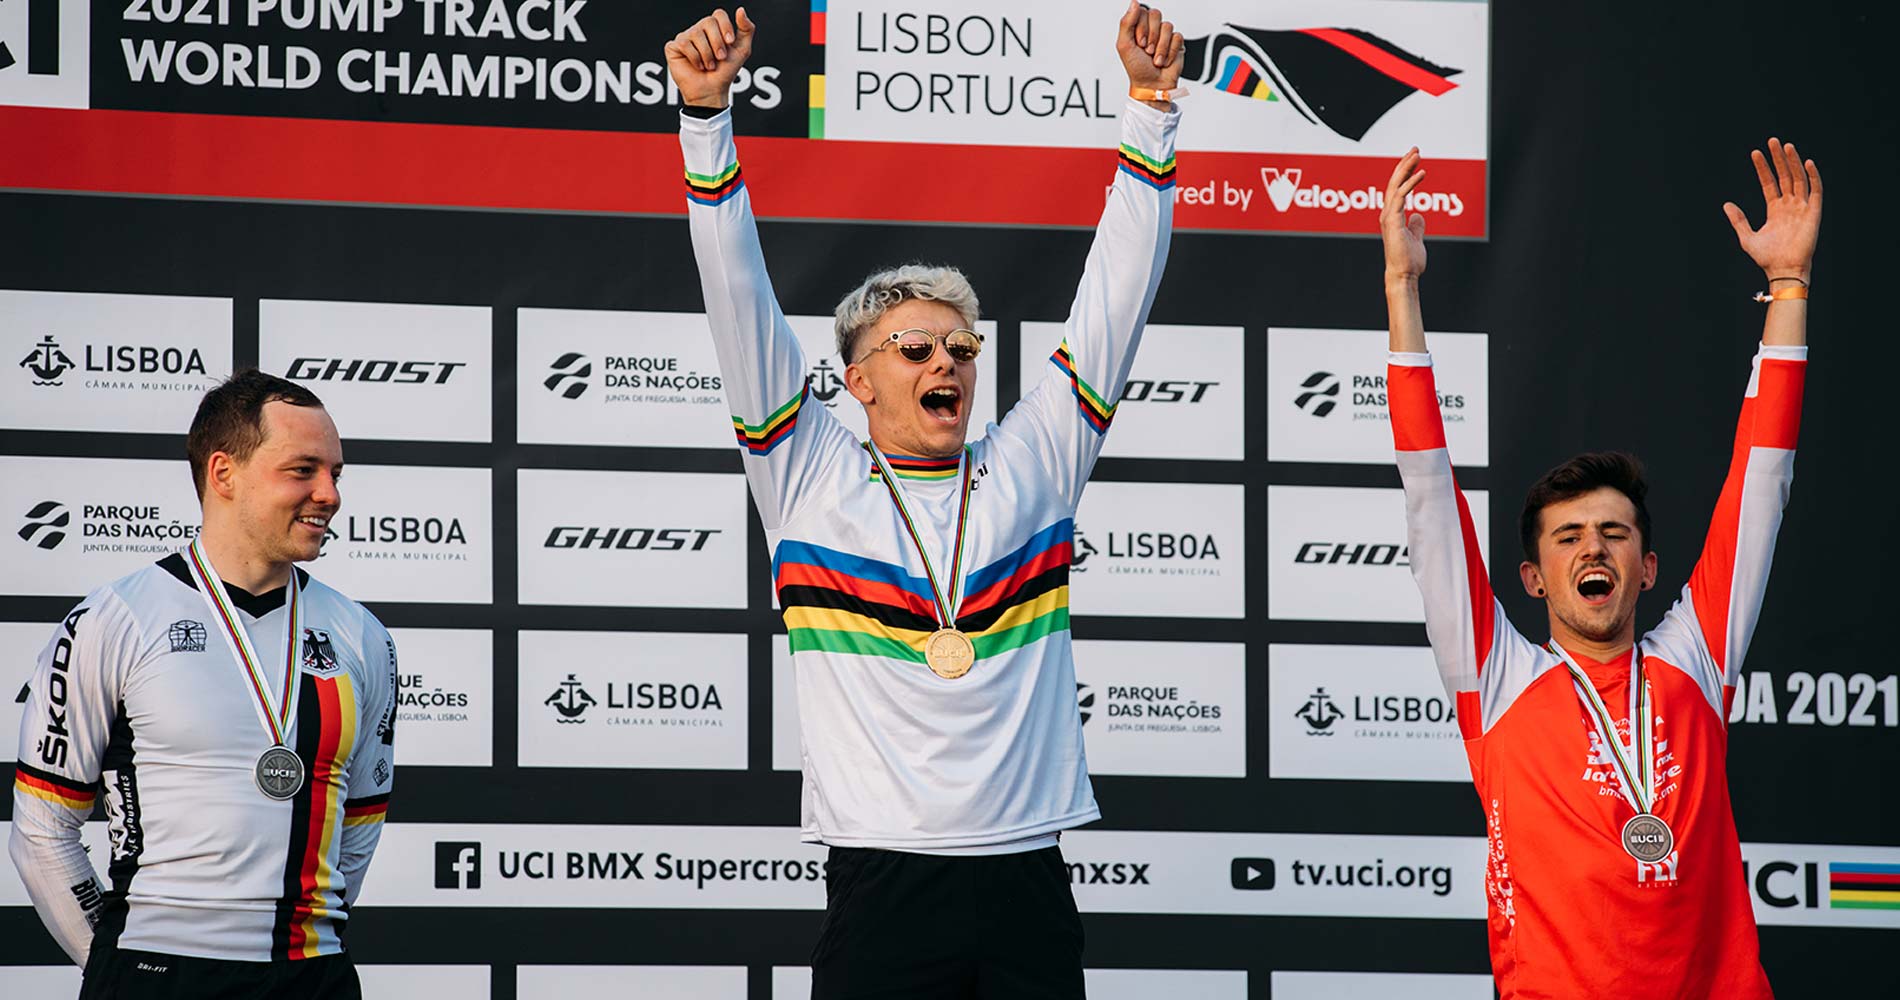 Eddy CLERTÉ - Champion du Monde de Pump Track